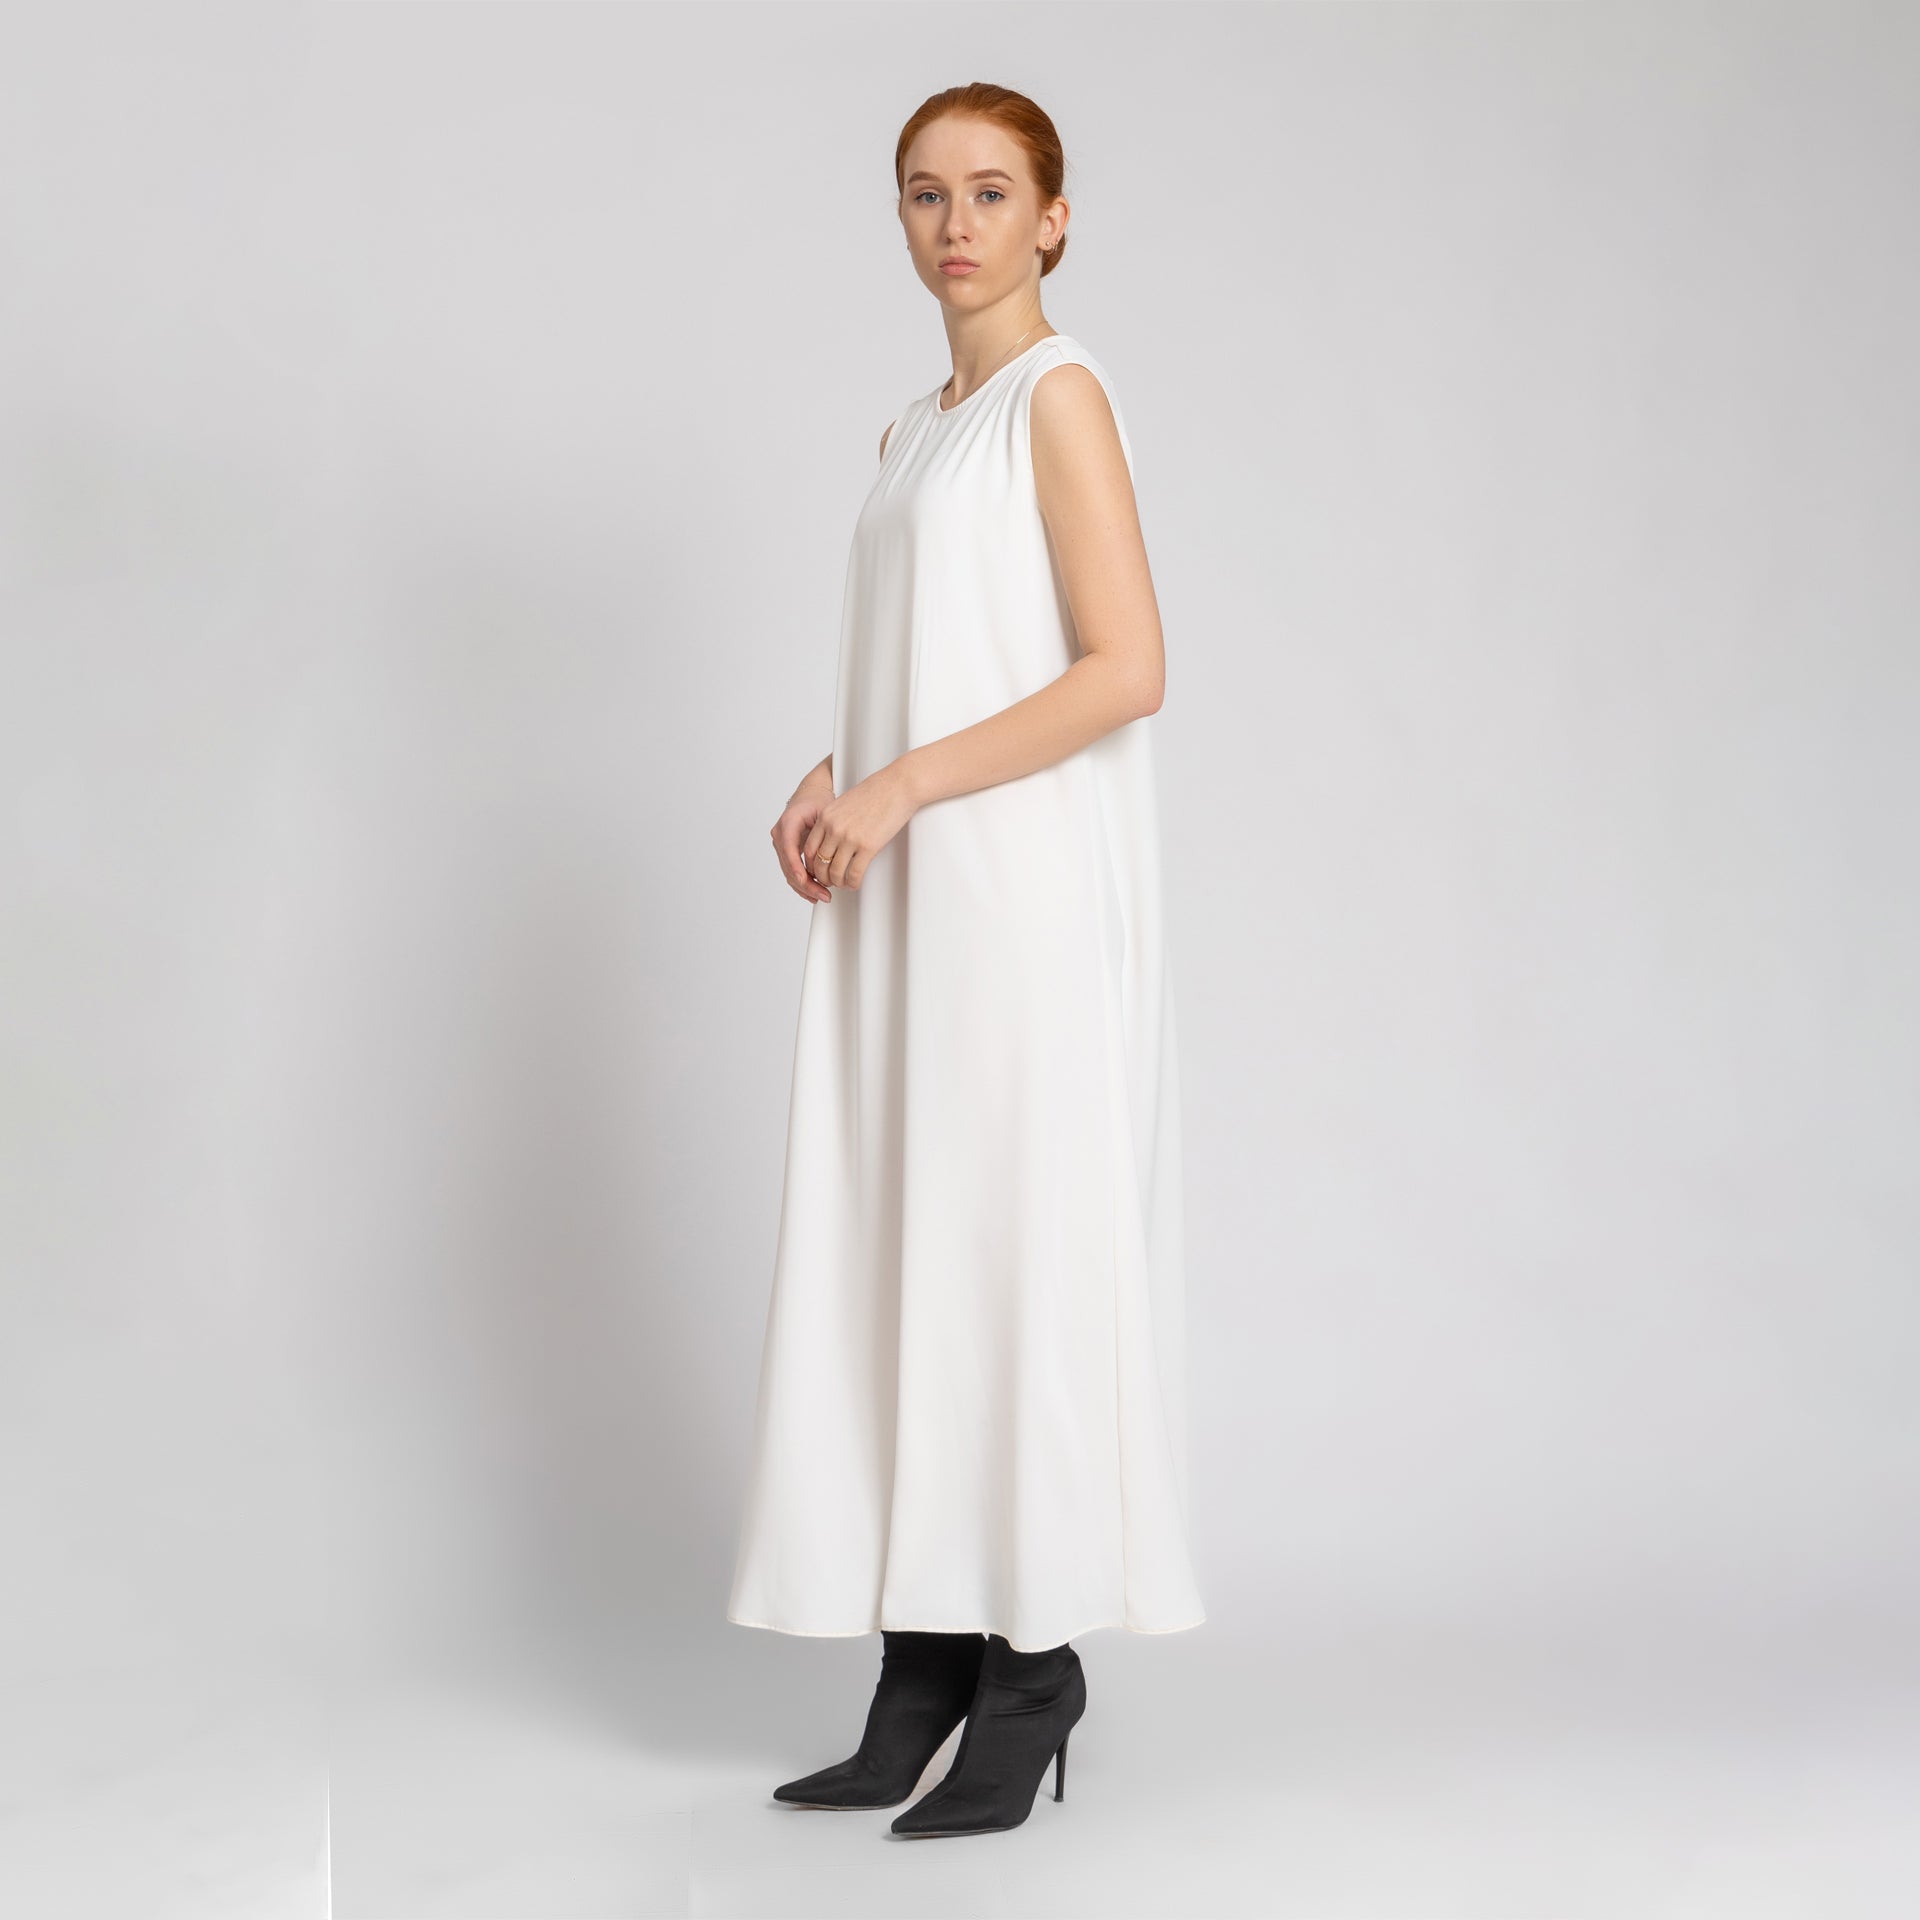 White Long Sleeveless Crepe Dress From Elanove